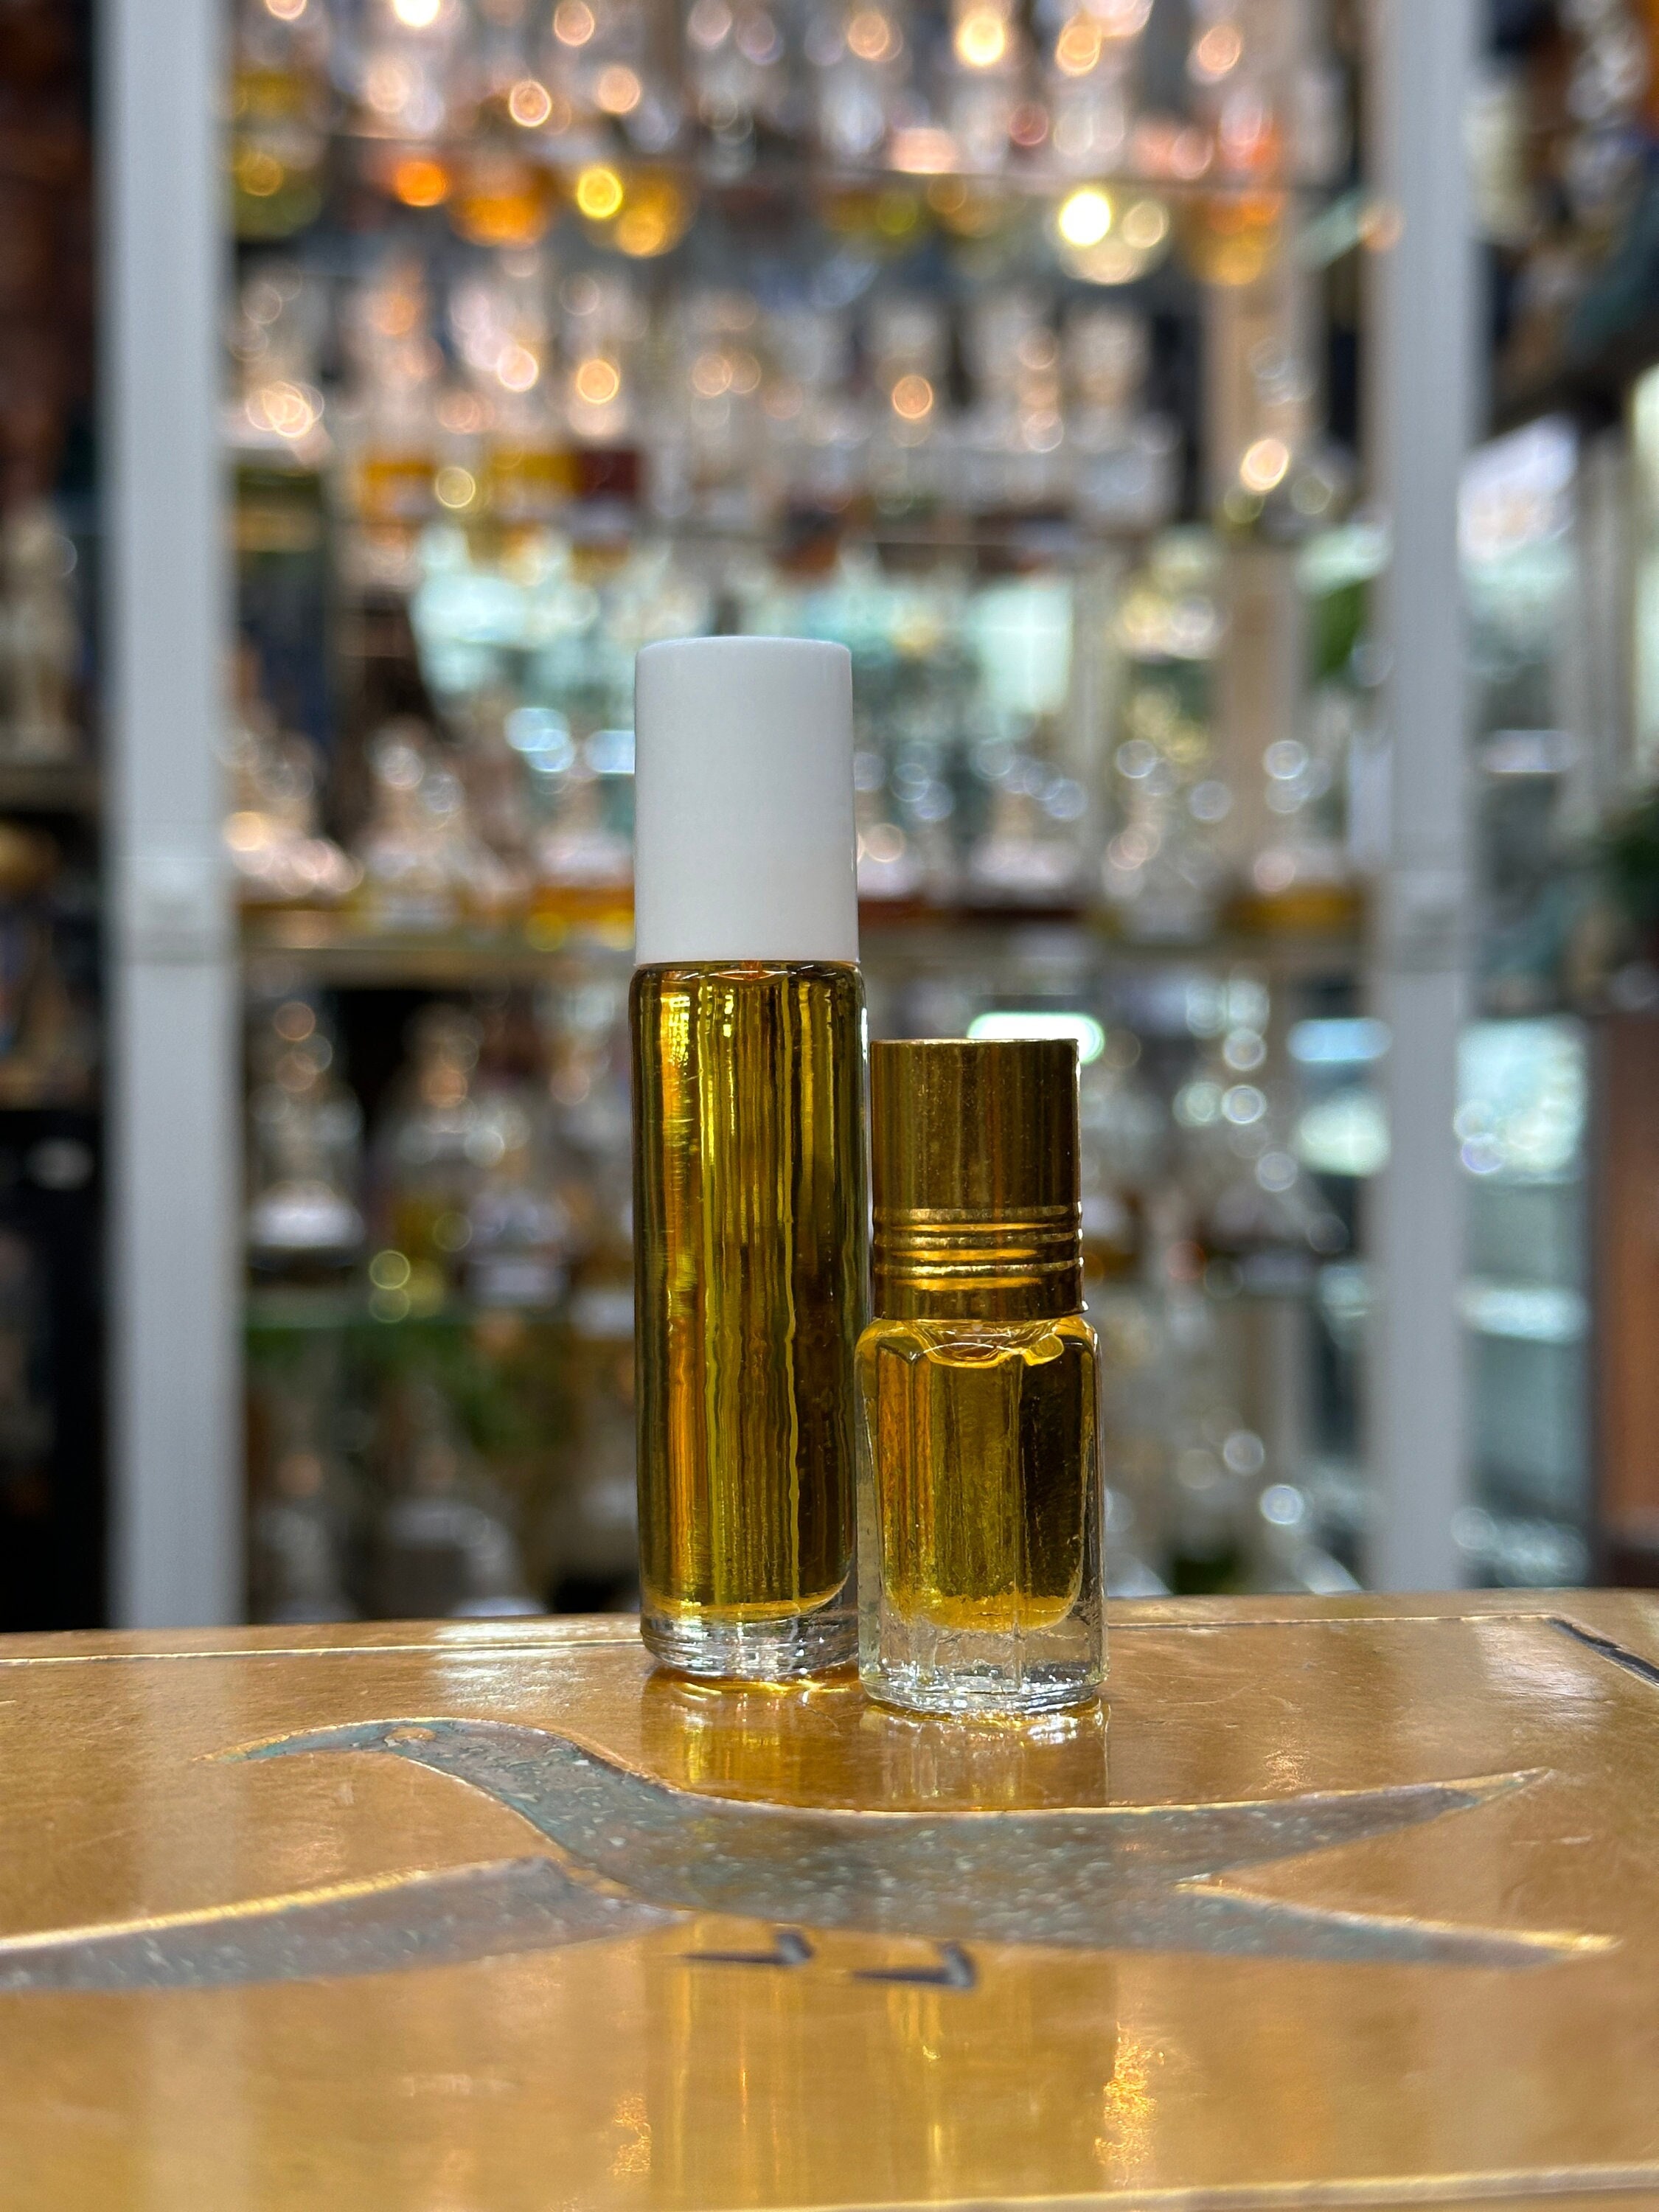 Egyptian Jasmine Oil – Lalita